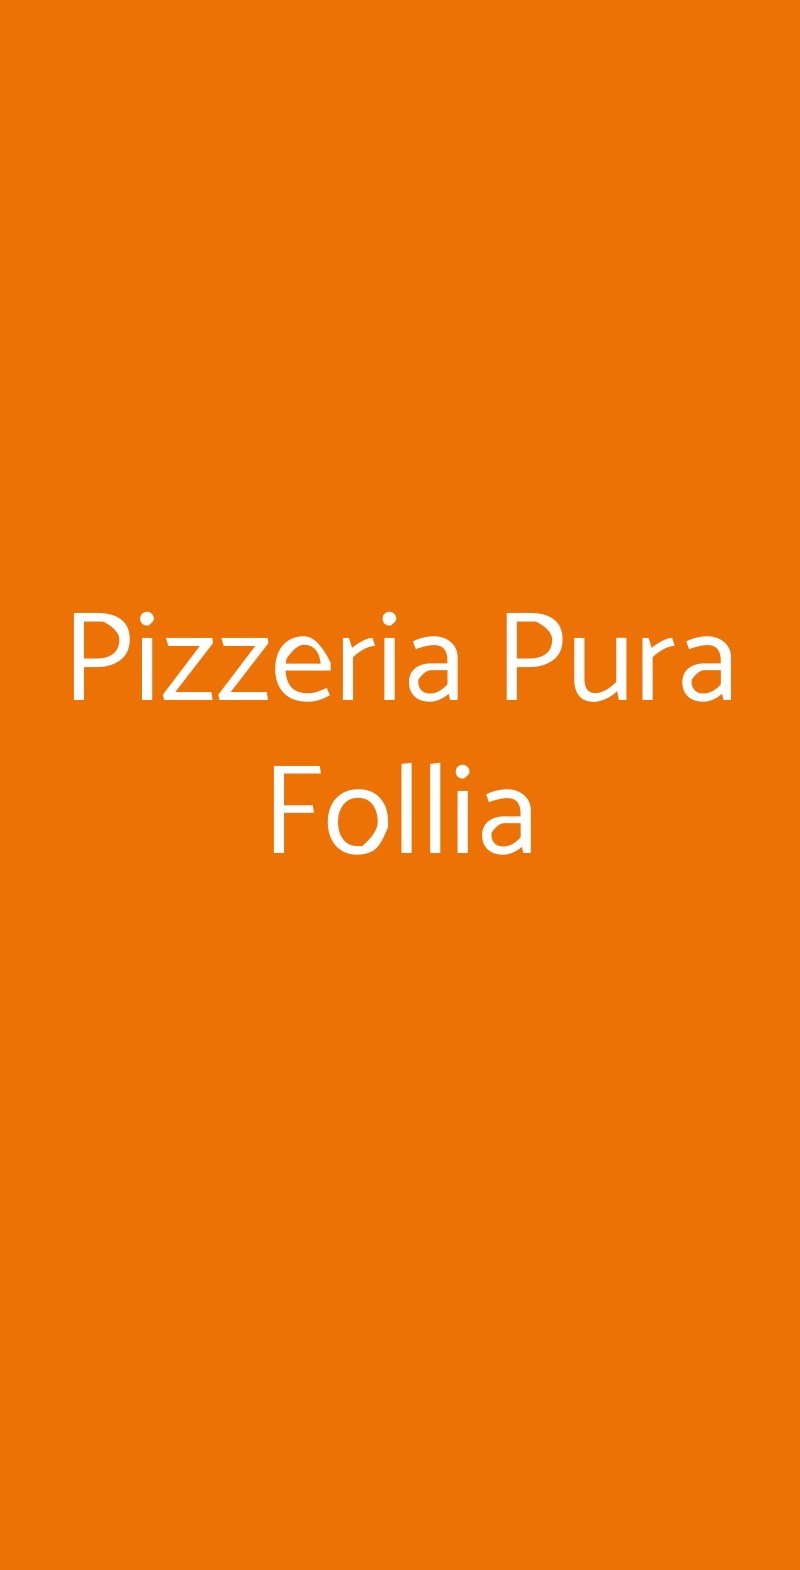 Pizzeria Pura Follia Carlentini menù 1 pagina